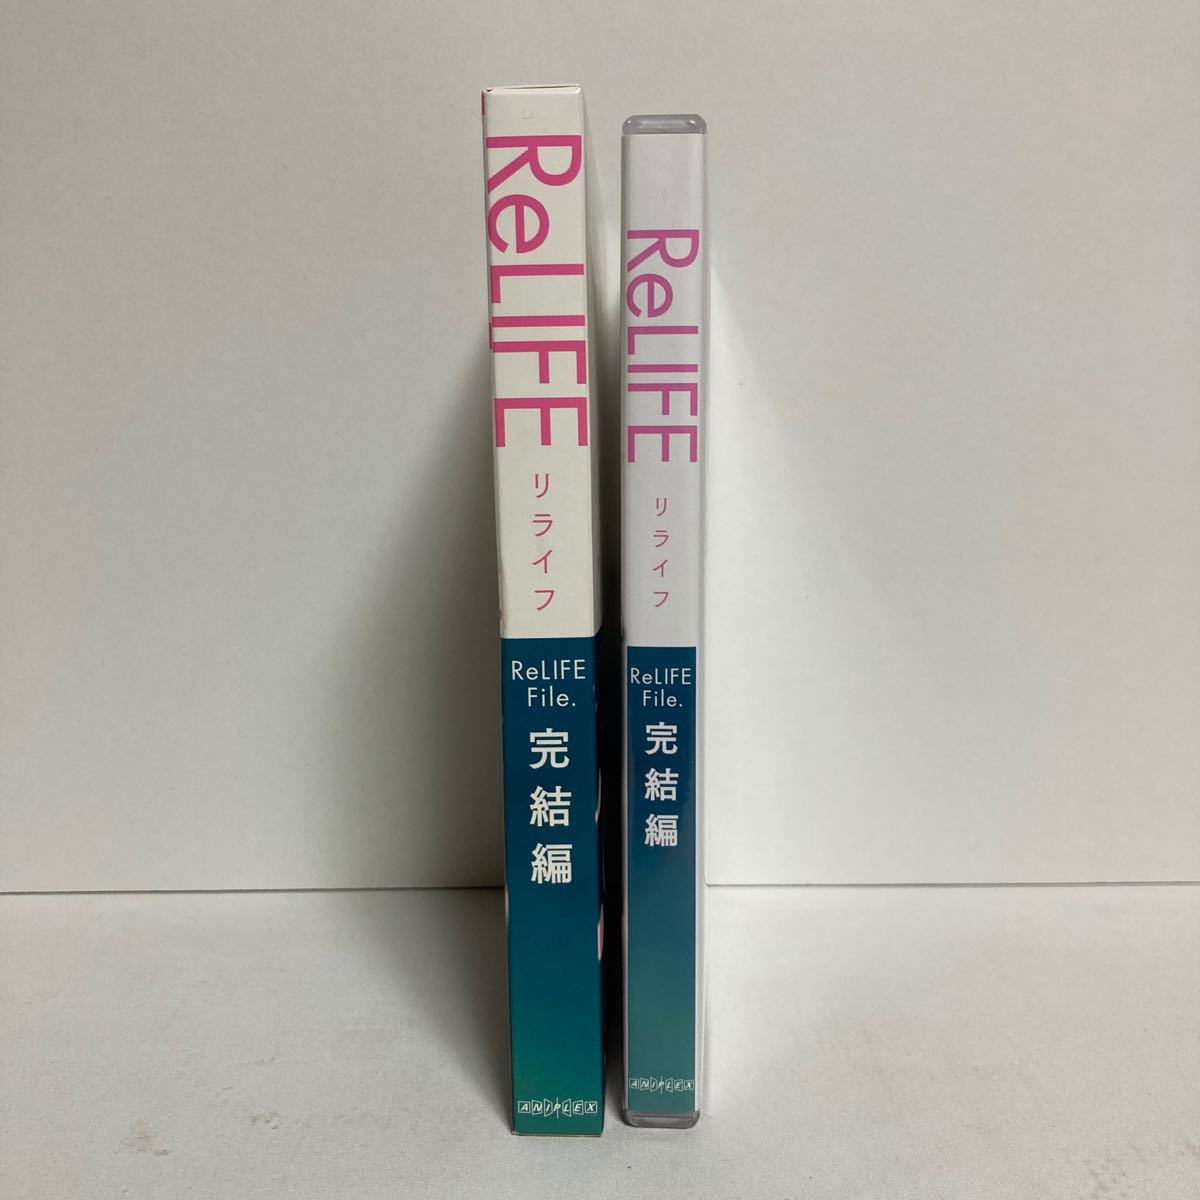 ReLIFE  DVD  TV版(13話)[北米版正規品] & OVA ReLIFE 完結編(全4話)[国内セル版]